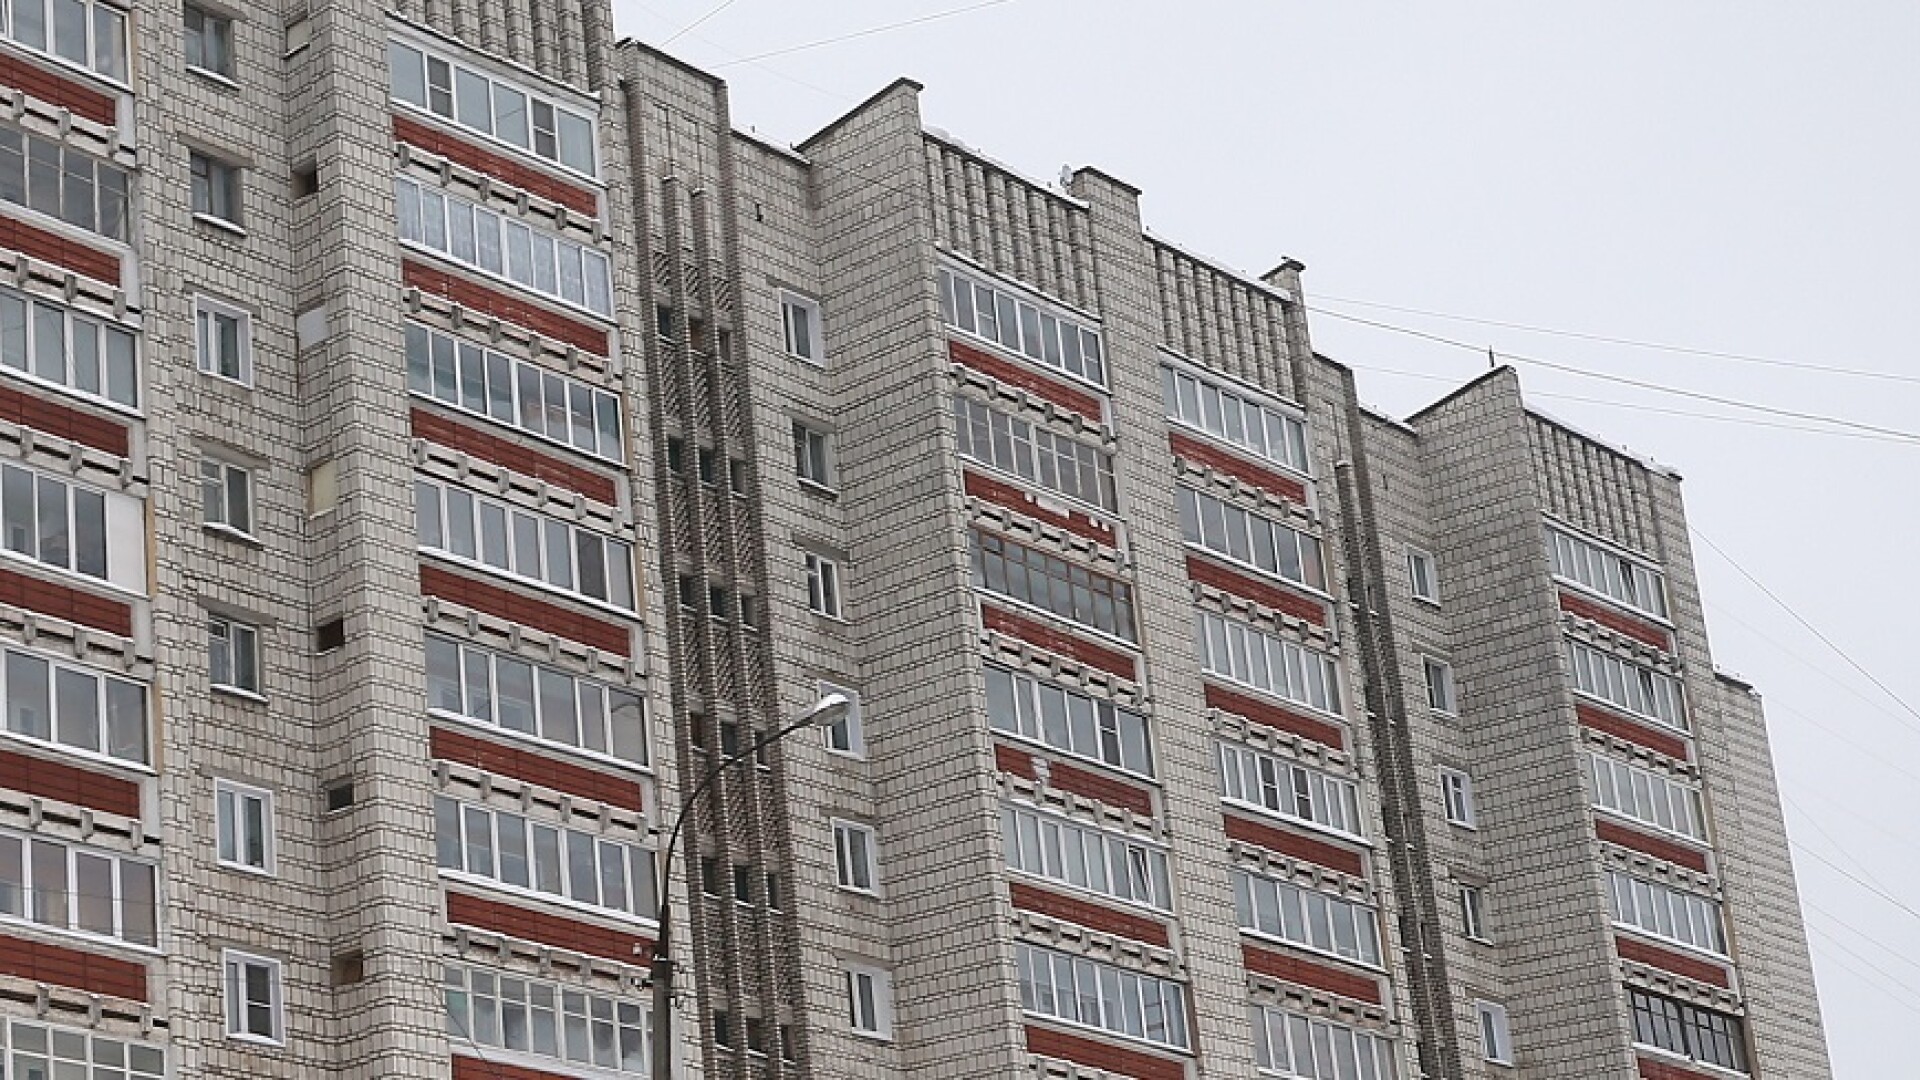 Un bărbat din Rusia a aruncat un copil de 18 luni de la etajul 5, enervat că micuțul plângea